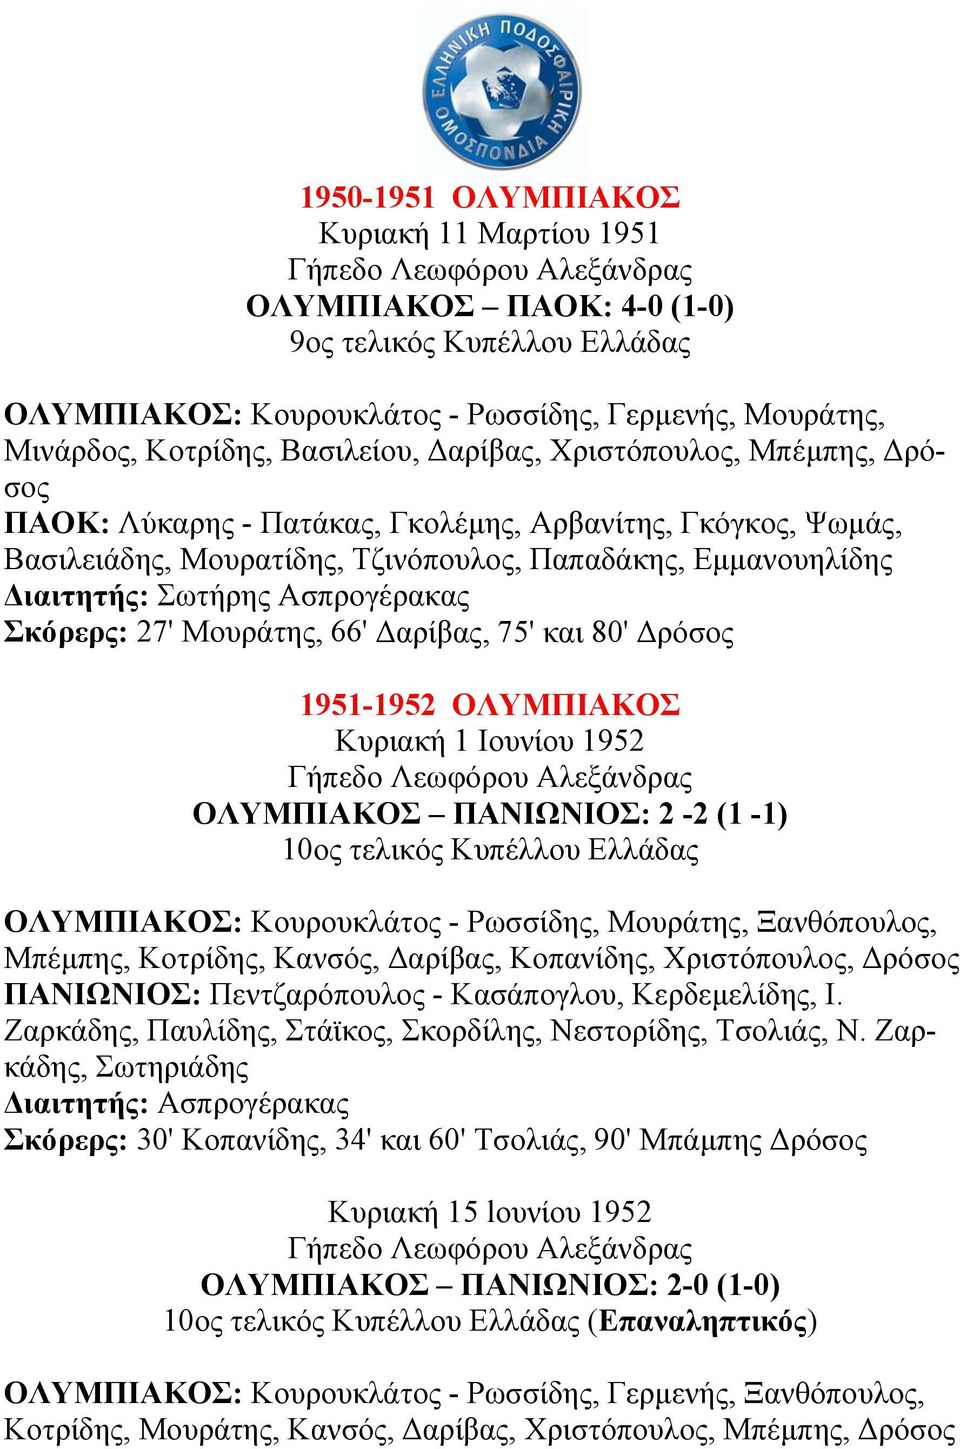 Μουράτης, 66' αρίβας, 75' και 80' ρόσος 1951-1952 ΟΛΥΜΠΙΑΚΟΣ Κυριακή 1 Ιουνίου 1952 ΟΛΥΜΠΙΑΚΟΣ ΠΑΝΙΩΝΙΟΣ: 2-2 (1-1) 10ος τελικός Κυπέλλου Ελλάδας ΟΛΥΜΠΙΑΚΟΣ: Κουρουκλάτος - Ρωσσίδης, Μουράτης,